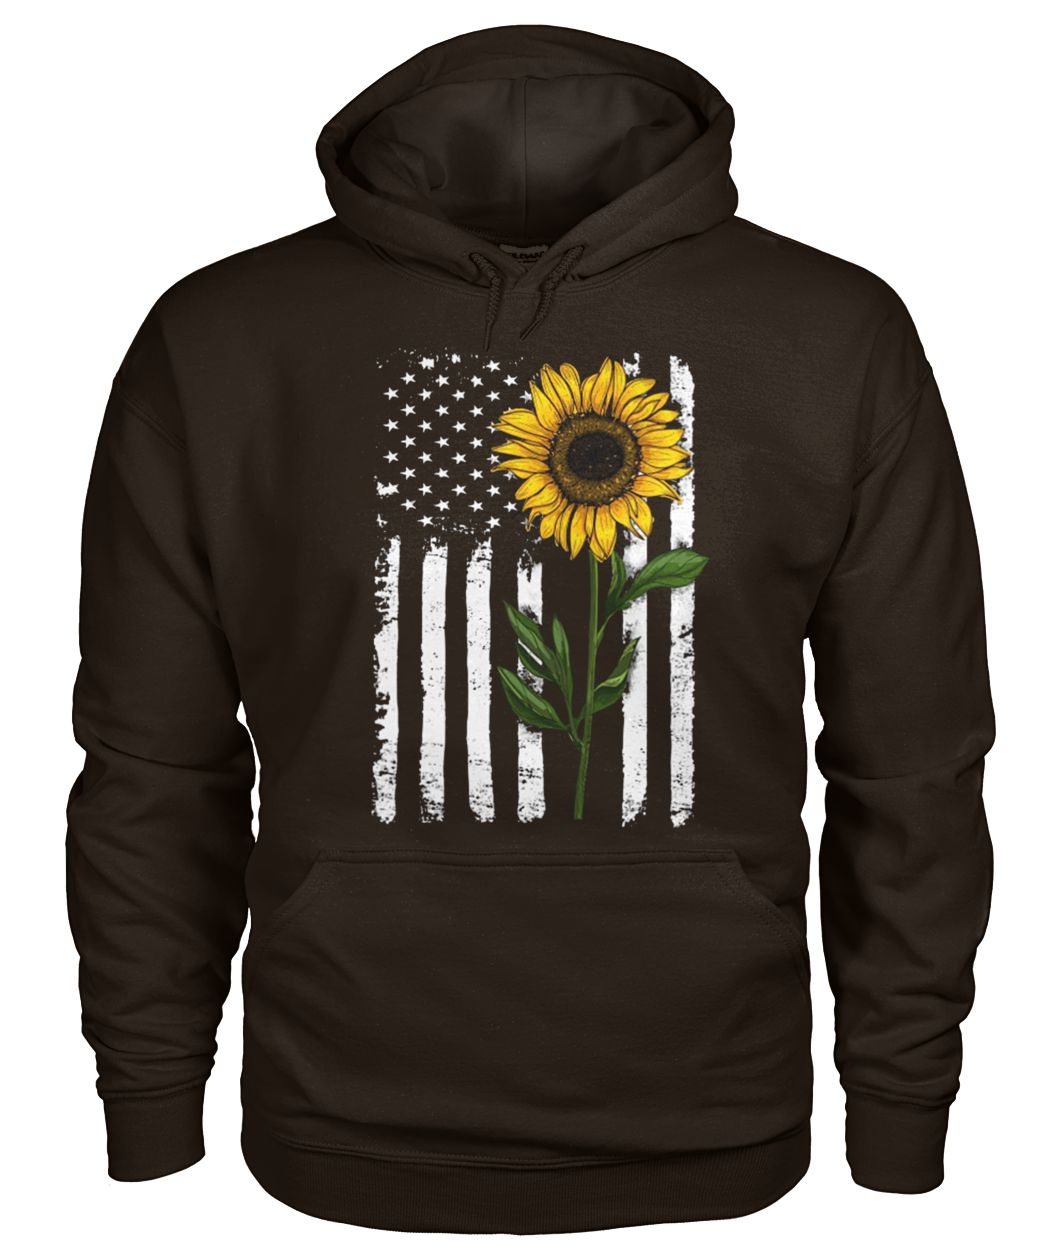 American flag sunflower hippie distressed gildan hoodie